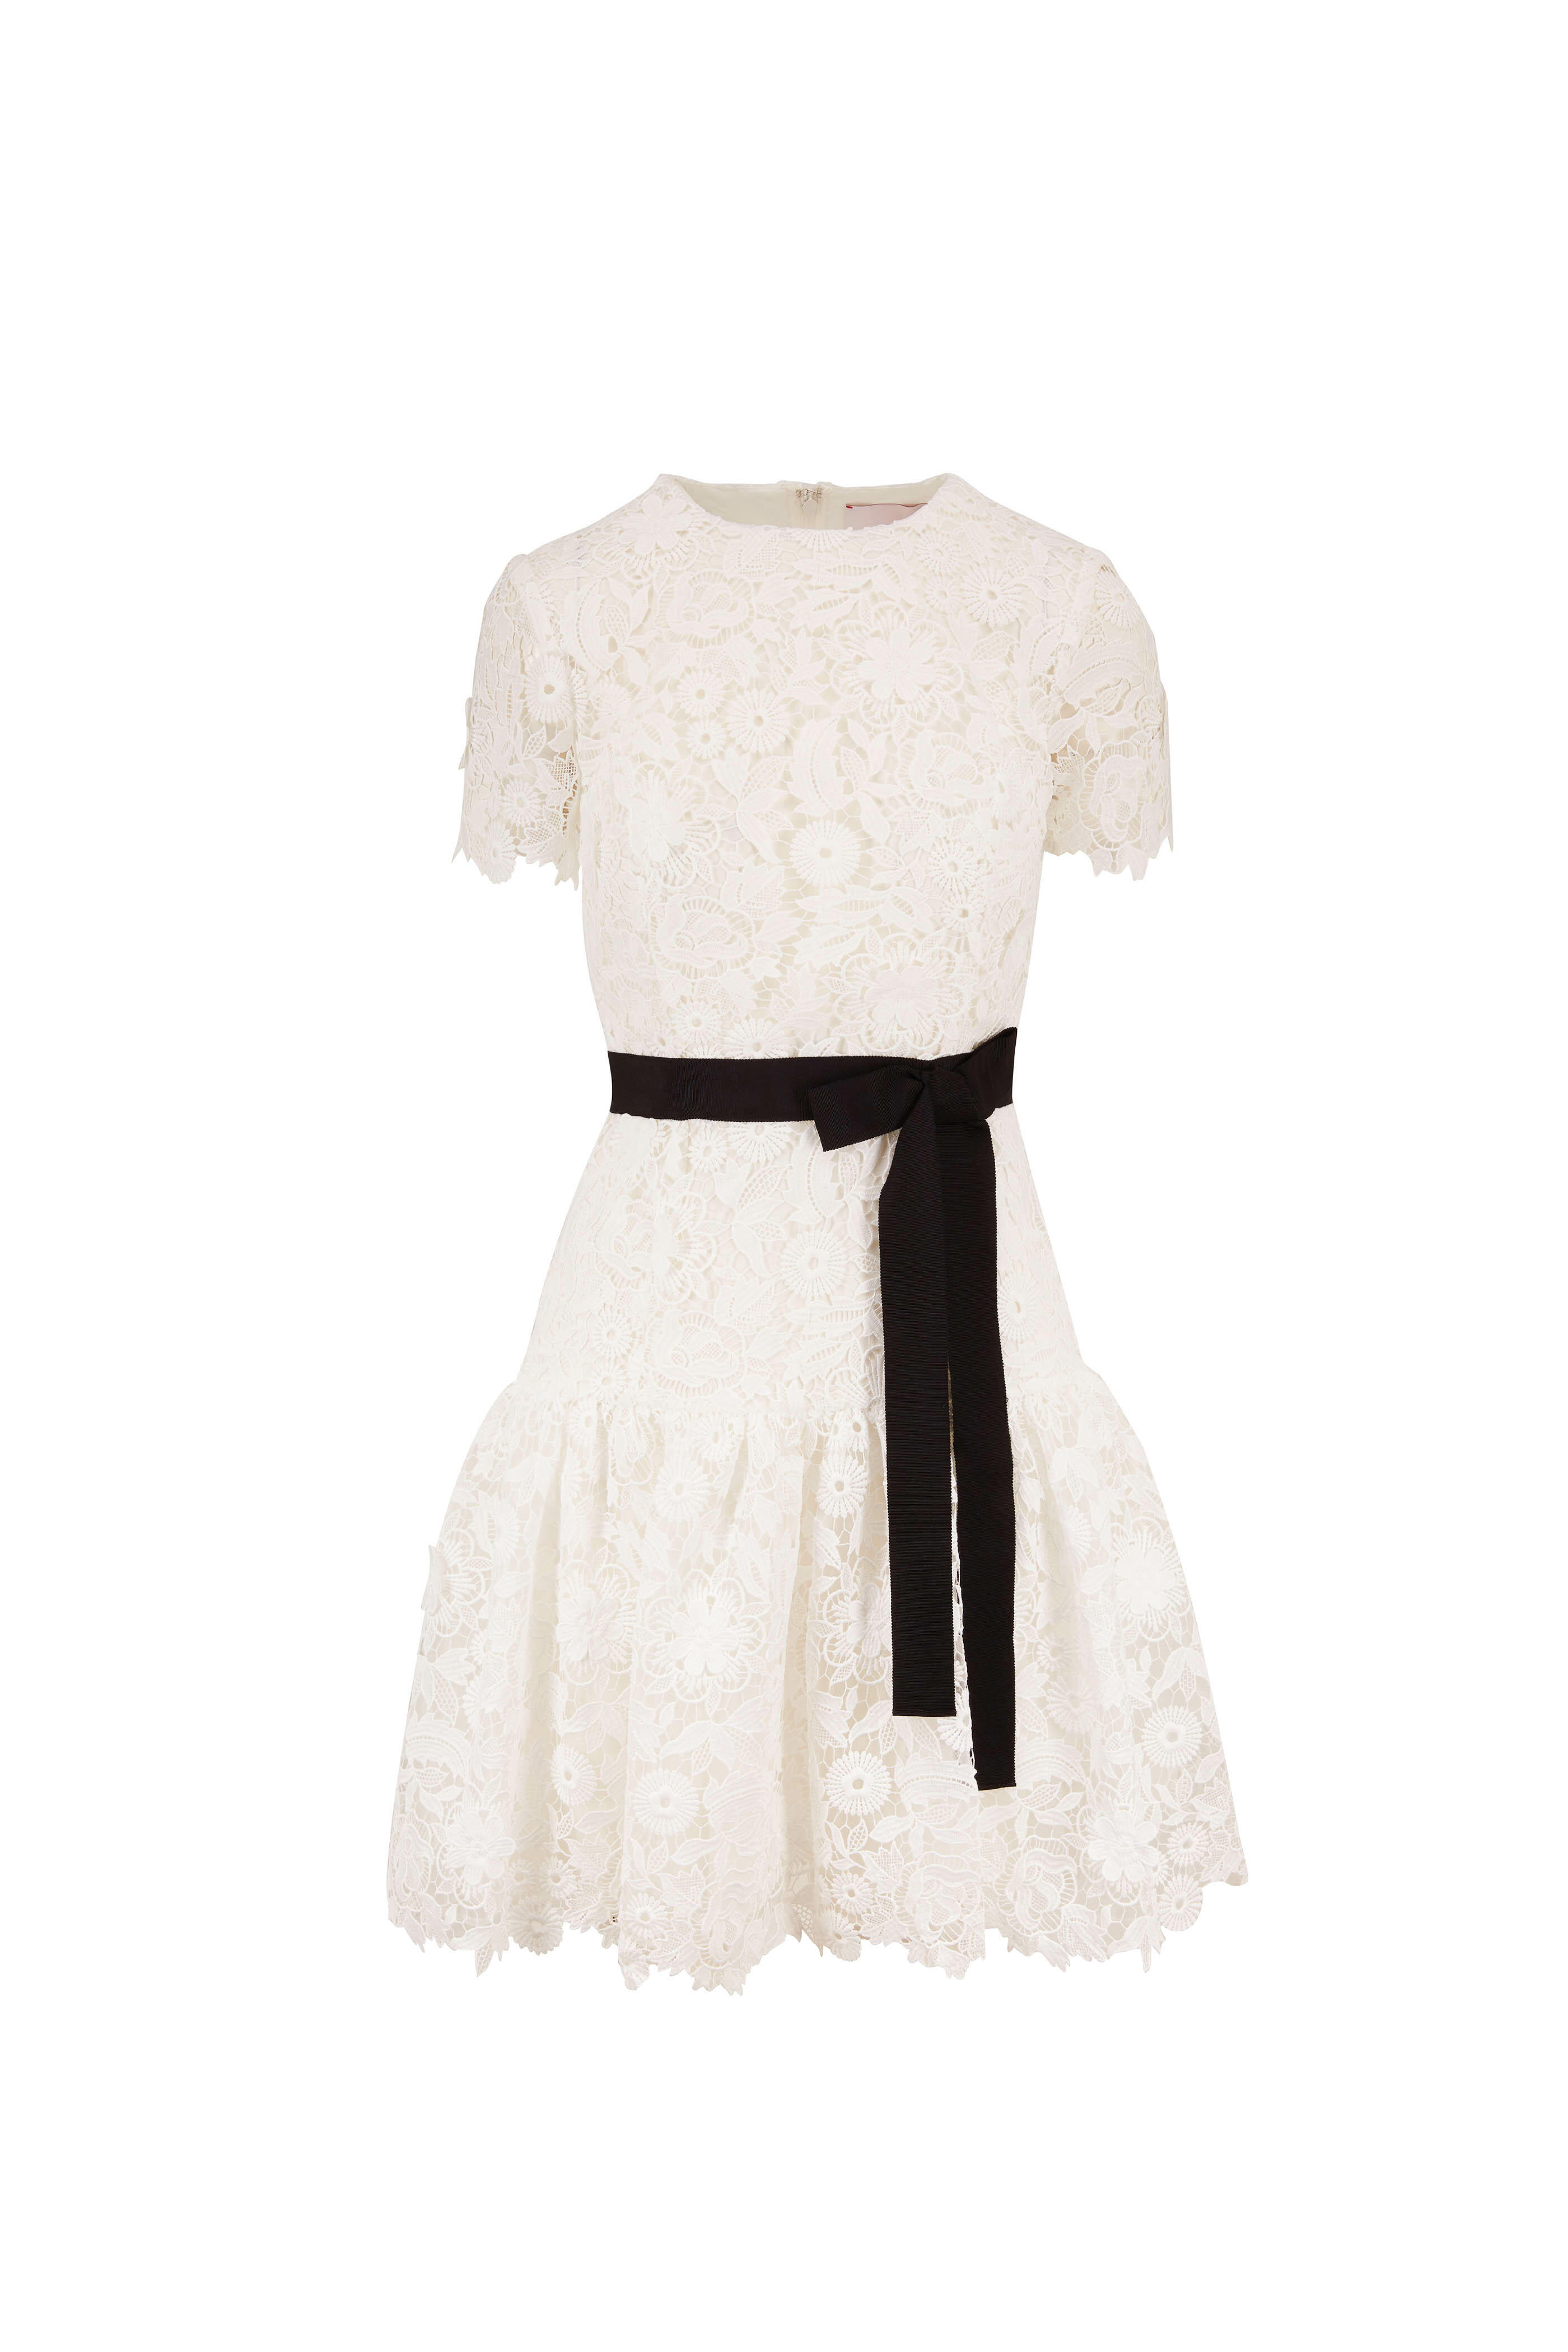 Carolina Herrera - White Lace Short Sleeve Dress